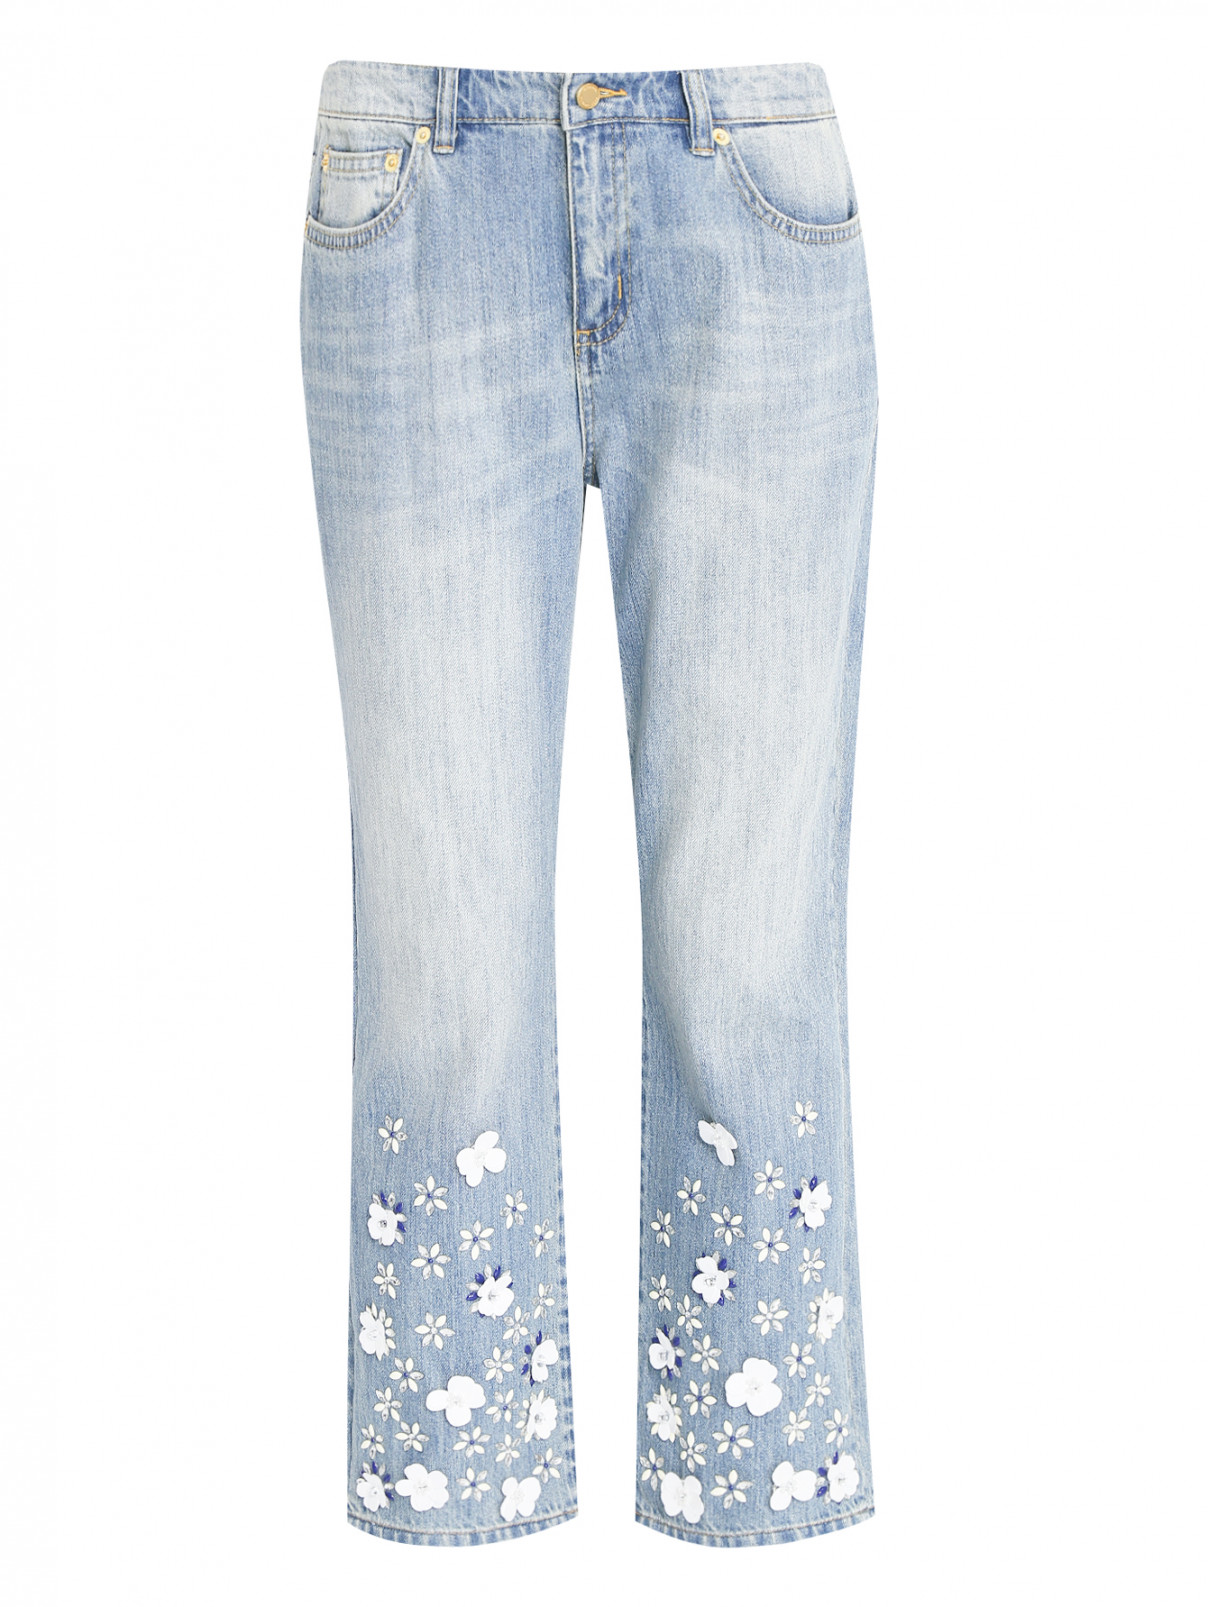 Укороченные джинсы с декоративной аппликацией Michael by Michael Kors  –  Общий вид  – Цвет:  Синий